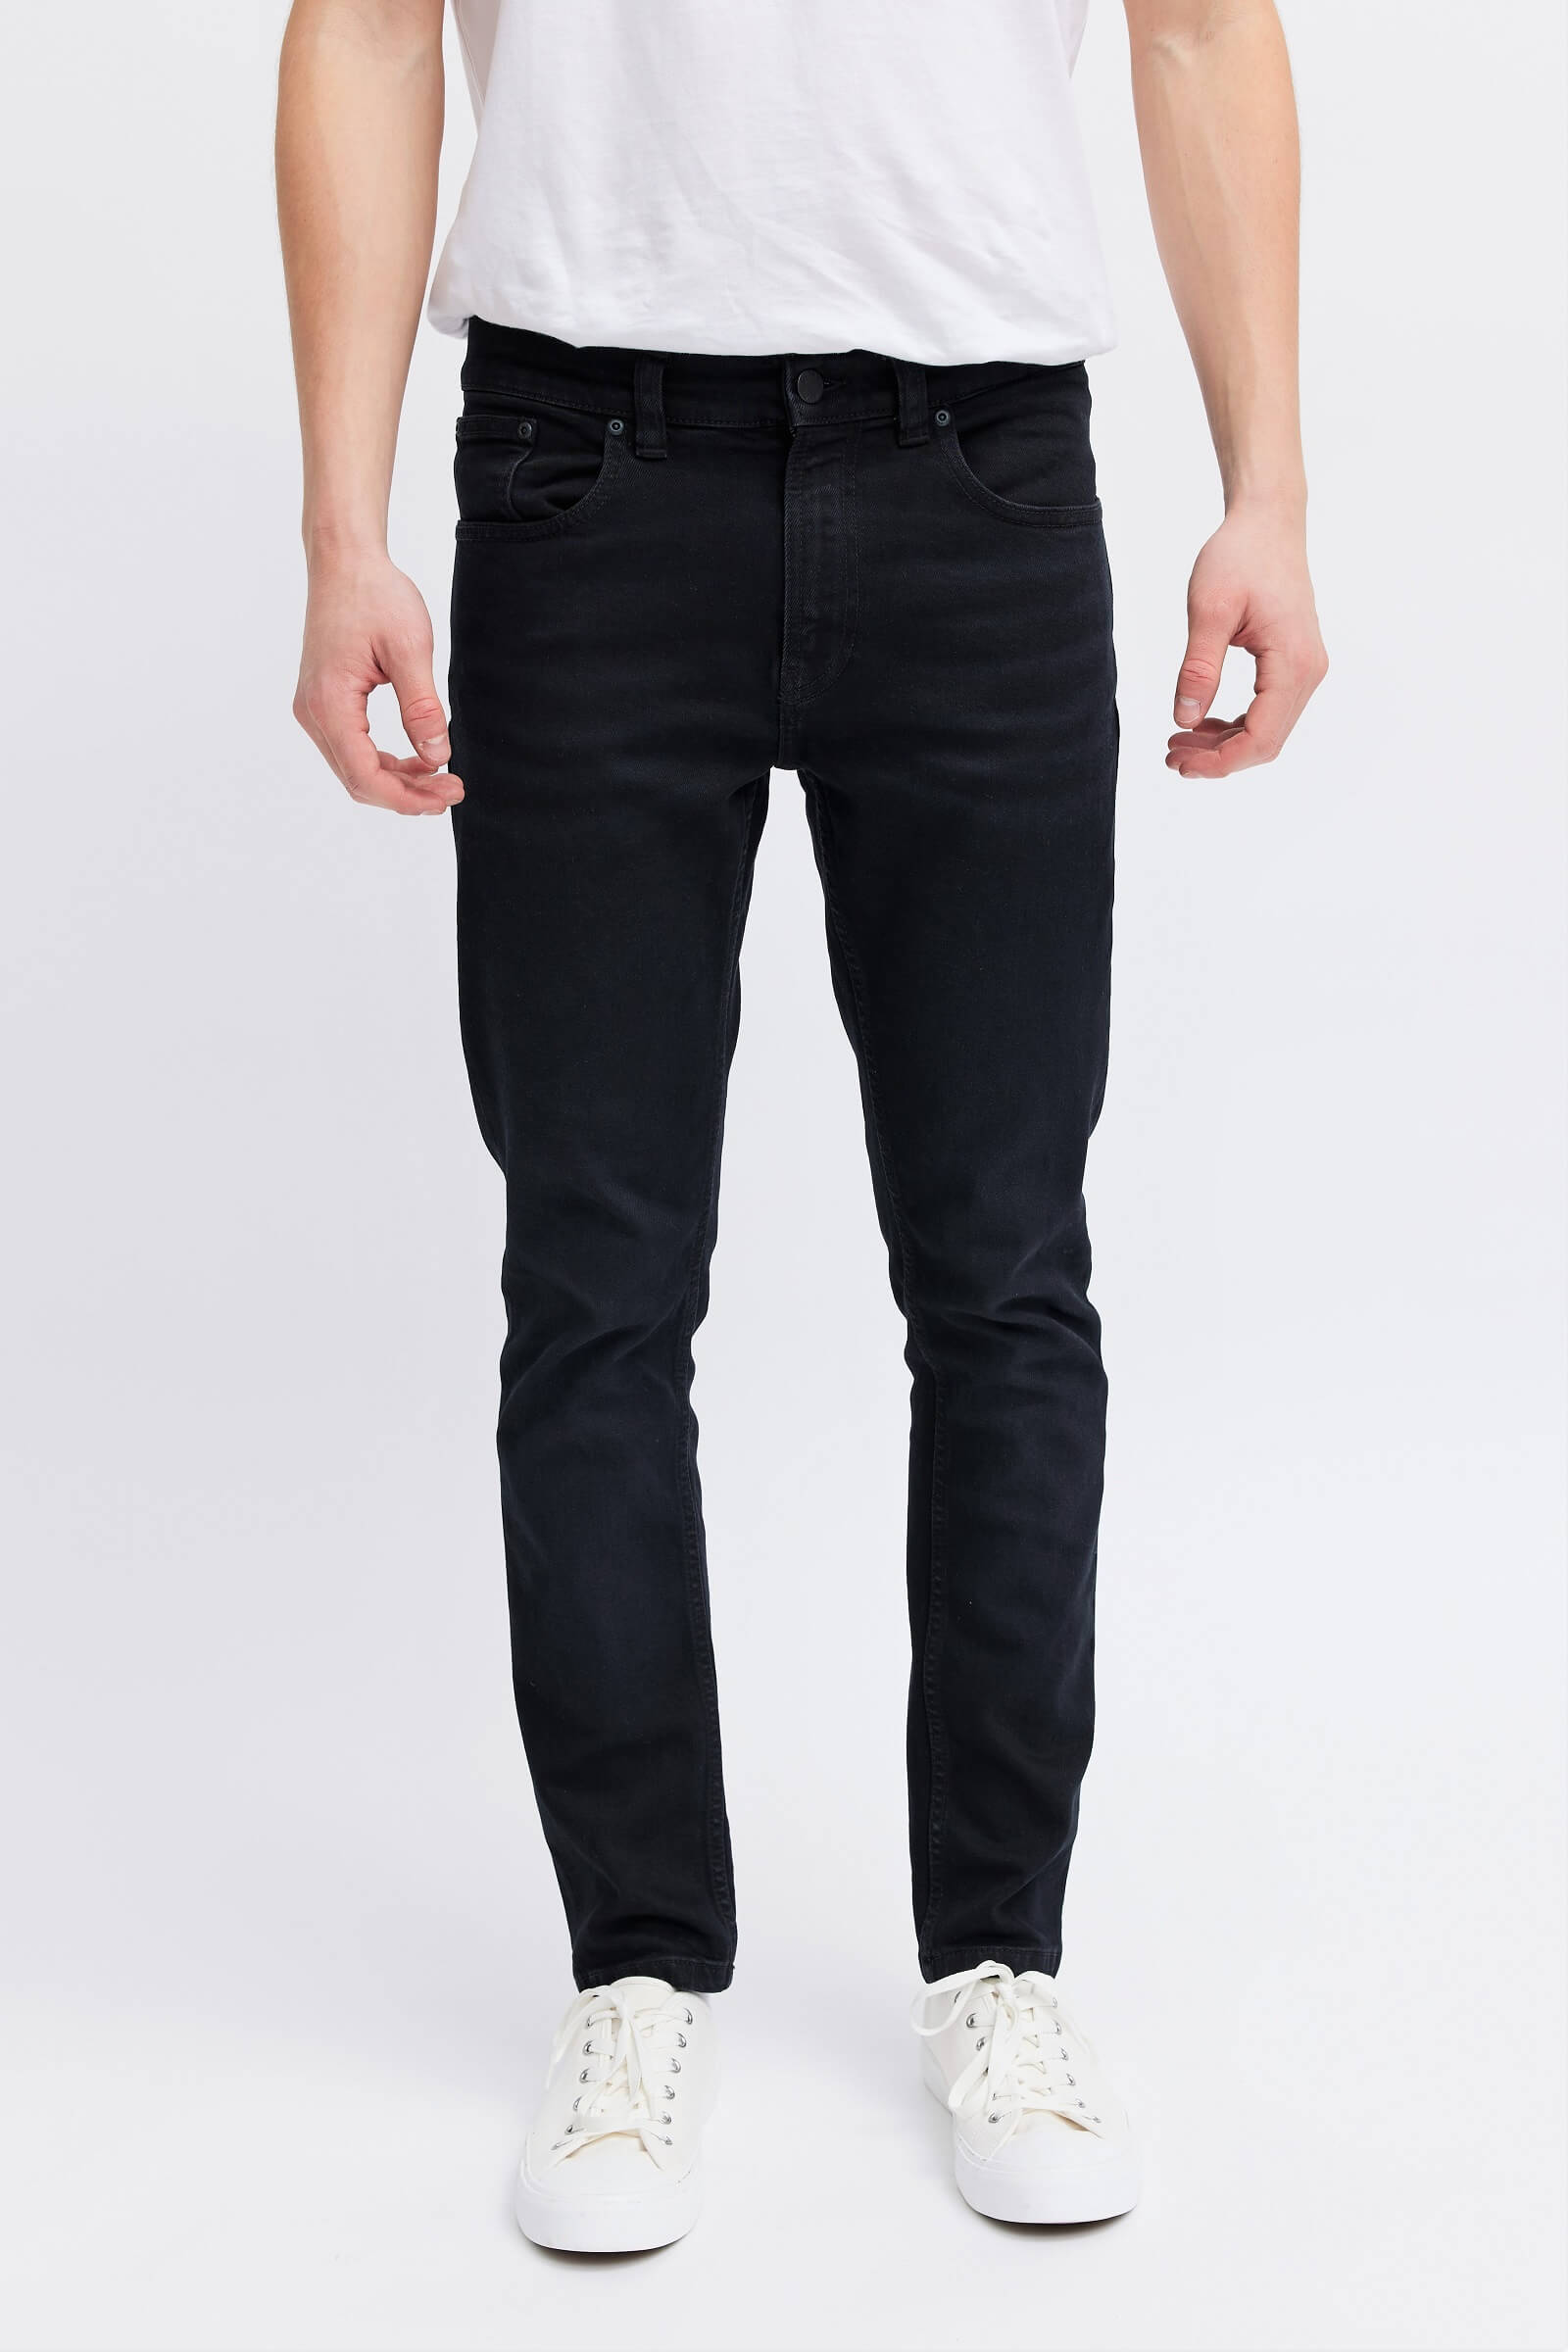 Black organic jeans for men